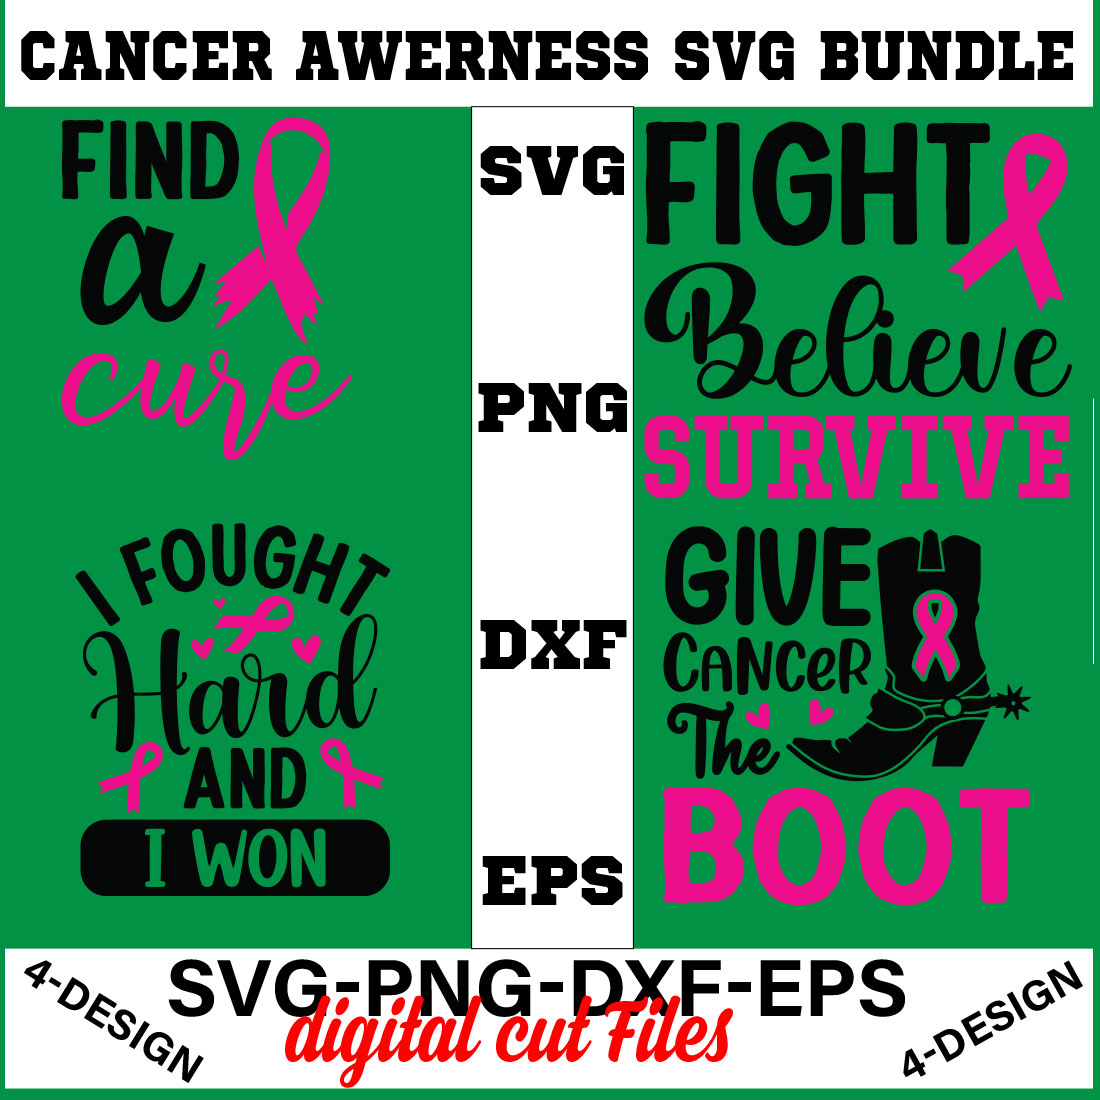 Cancer Awareness SVG T-shirt Design Bundle Volume-03 cover image.